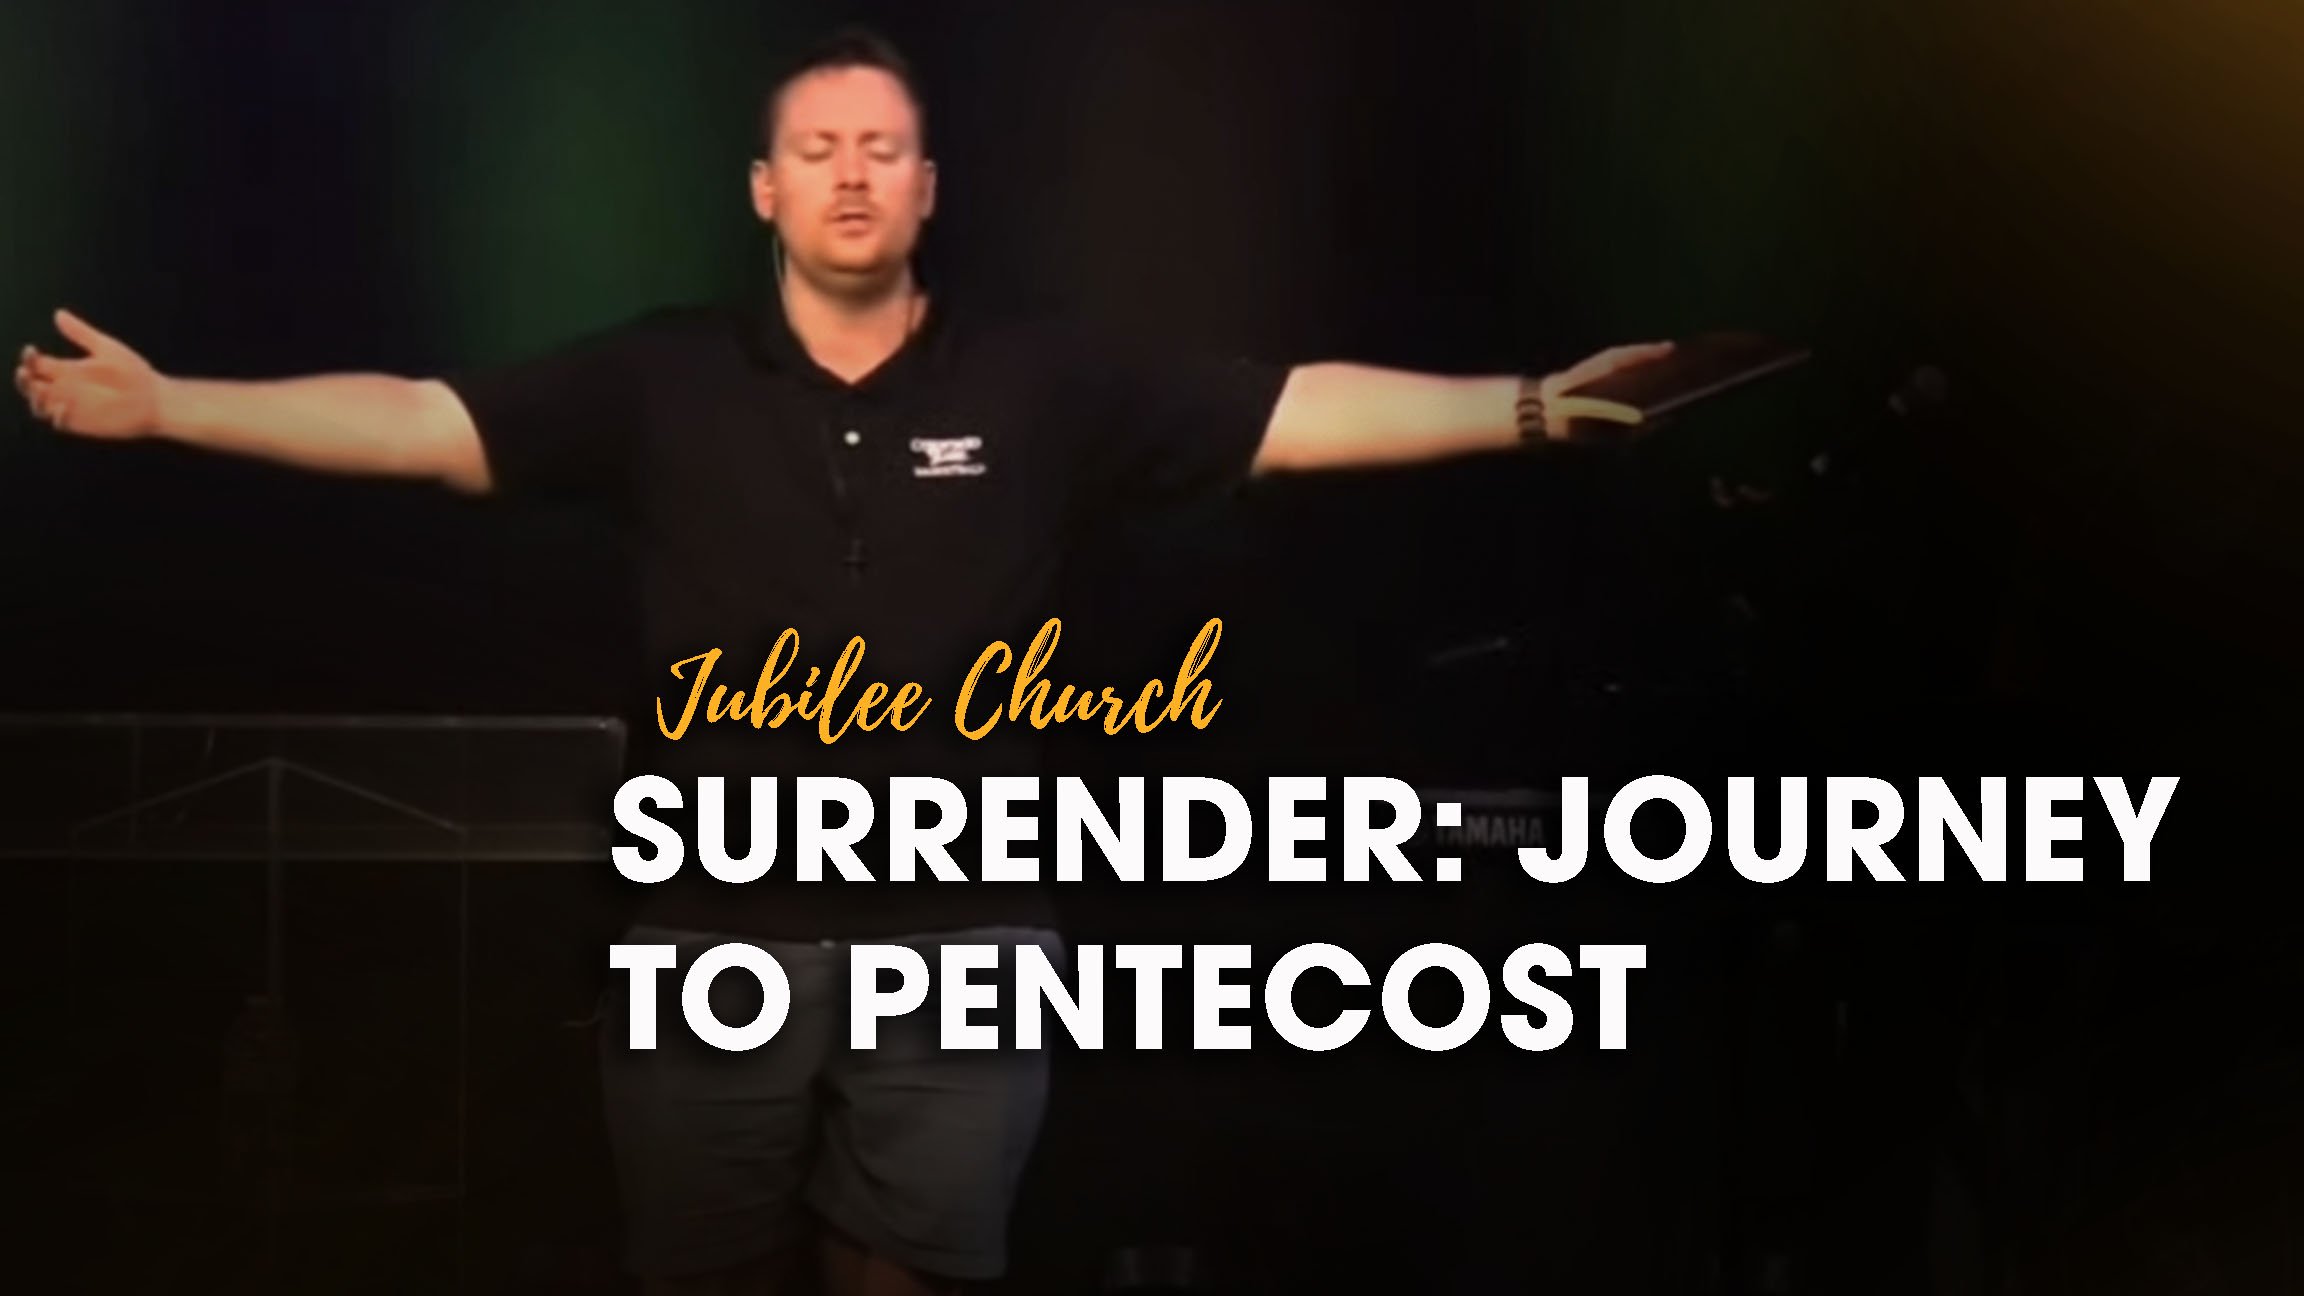 Surrender: Journey to Pentecost